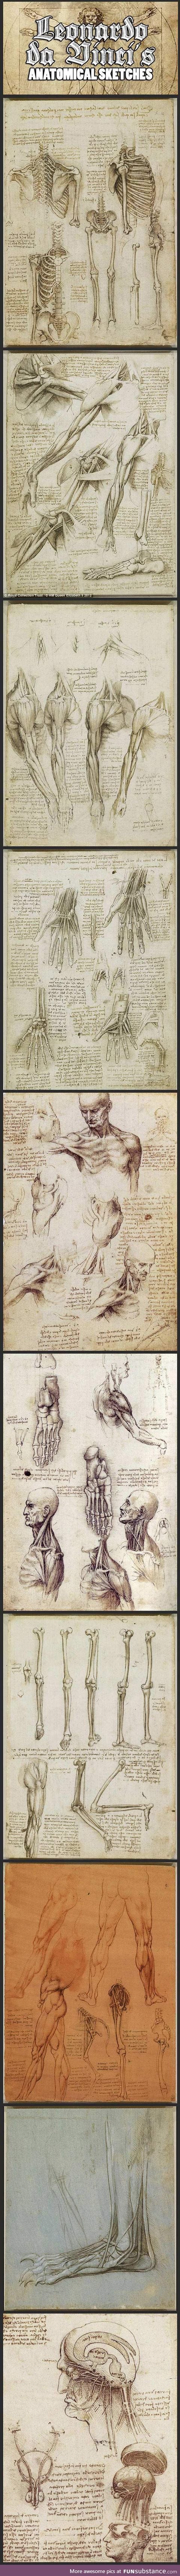 Leonardo Da Vinci's Original Anatomical Sketches